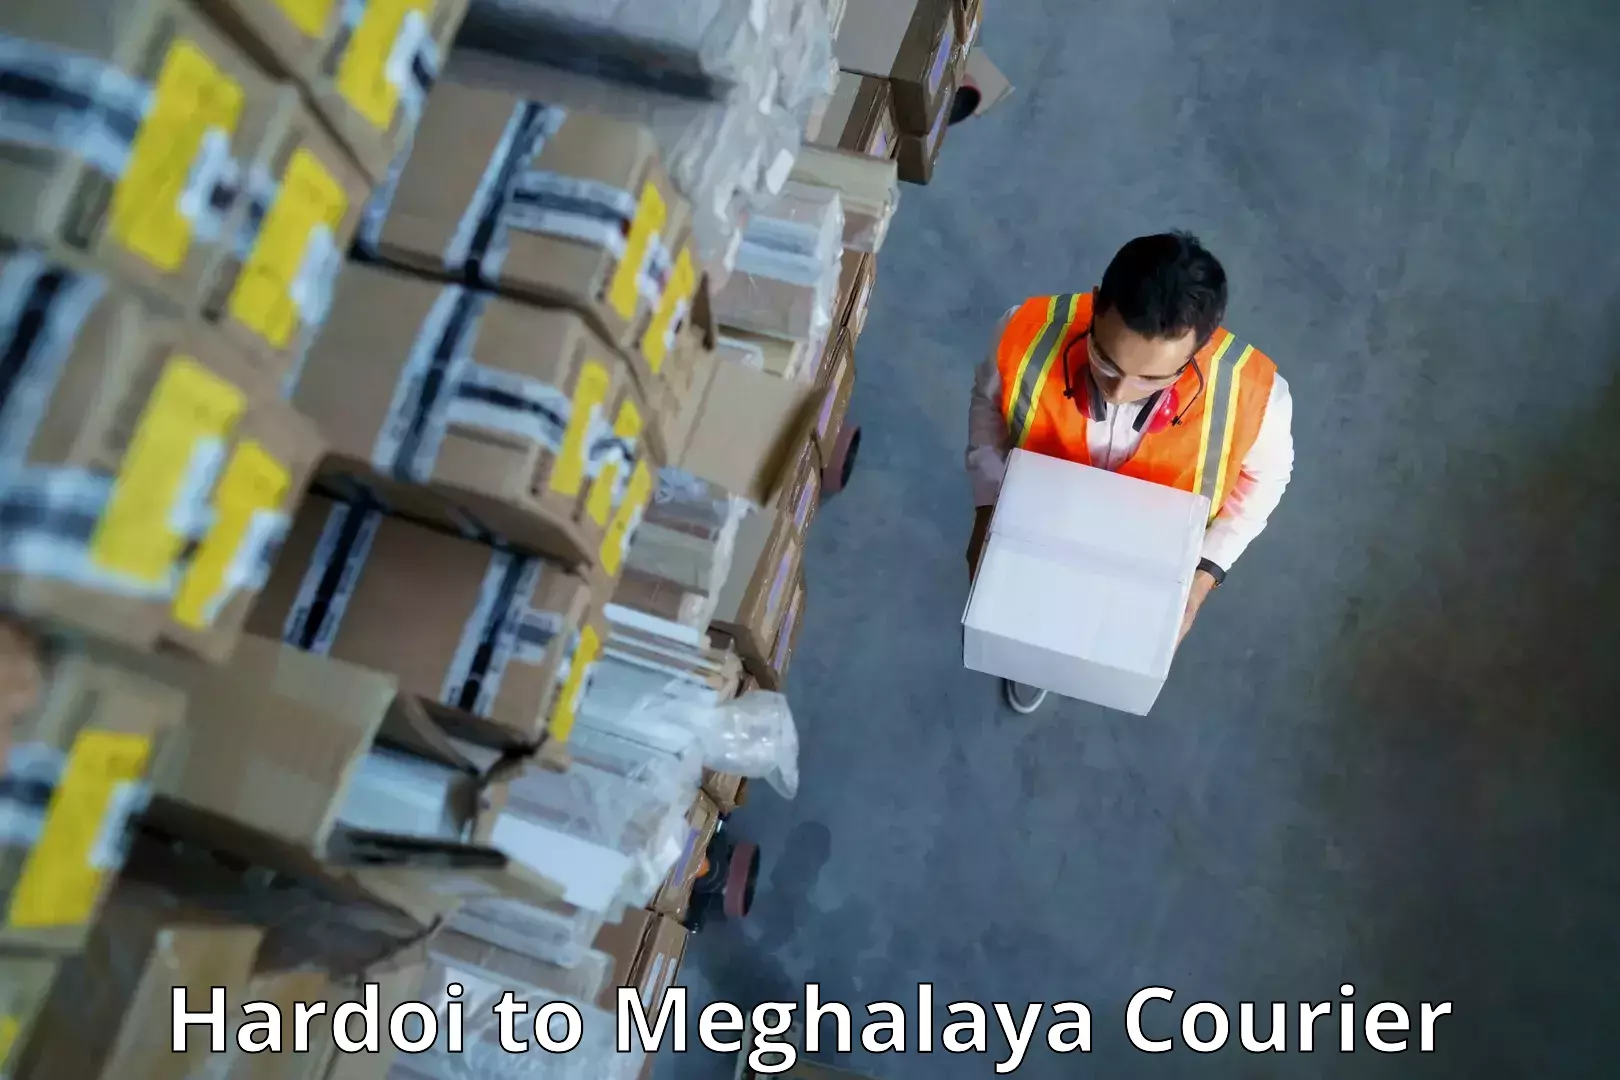 Next-generation courier services Hardoi to Tura